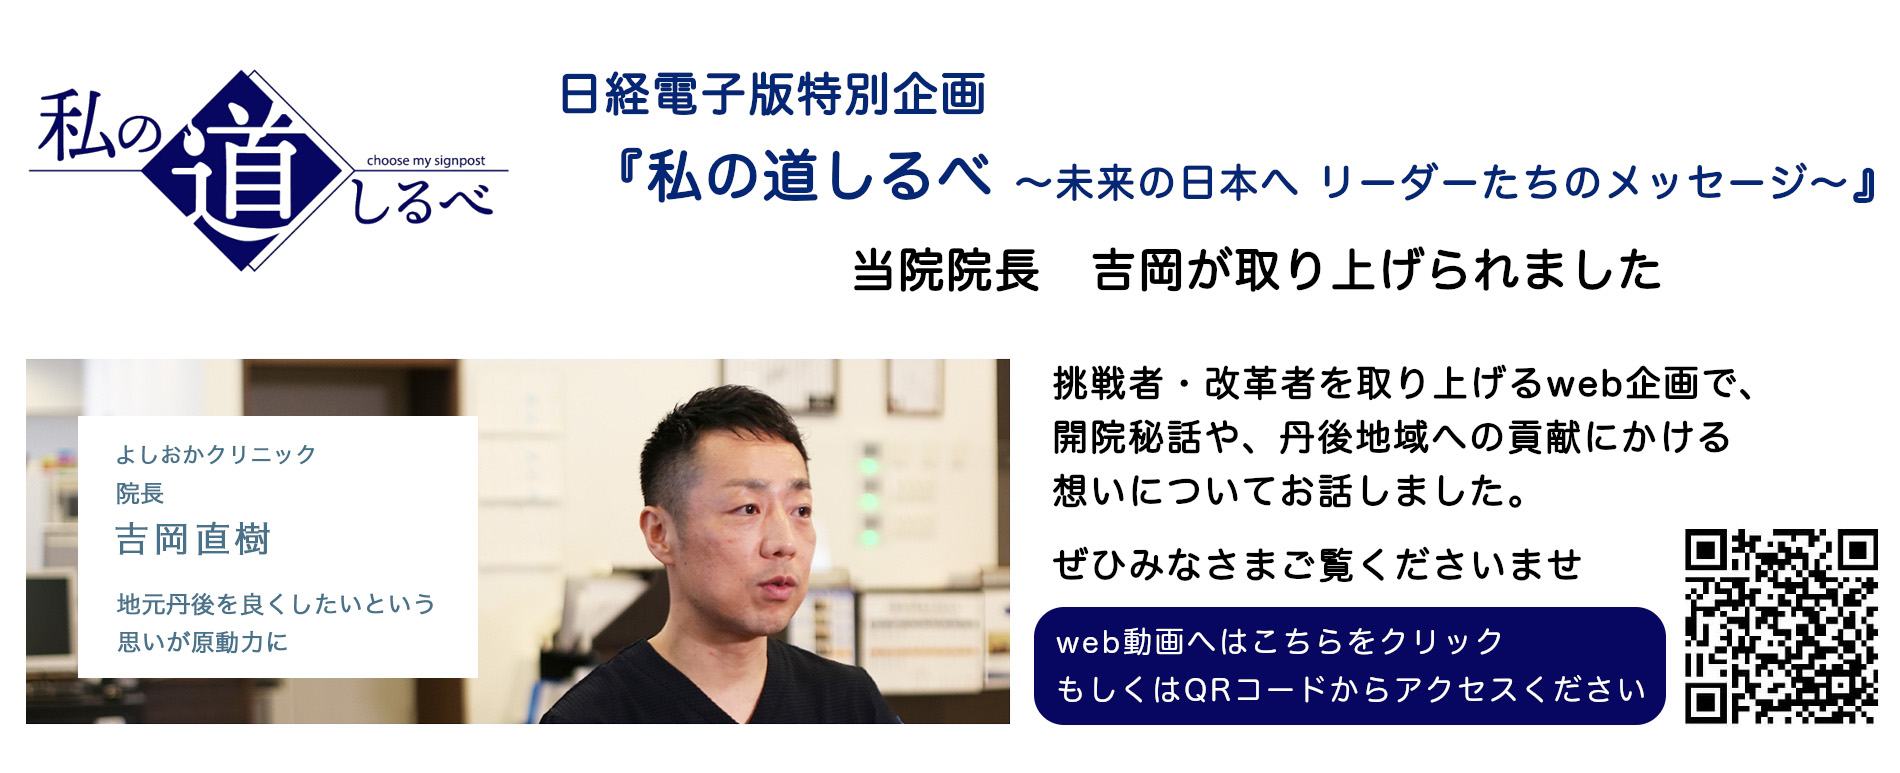 日経電子版特別企画『私の道しるべ』当院院長の吉岡が取り上げられました。